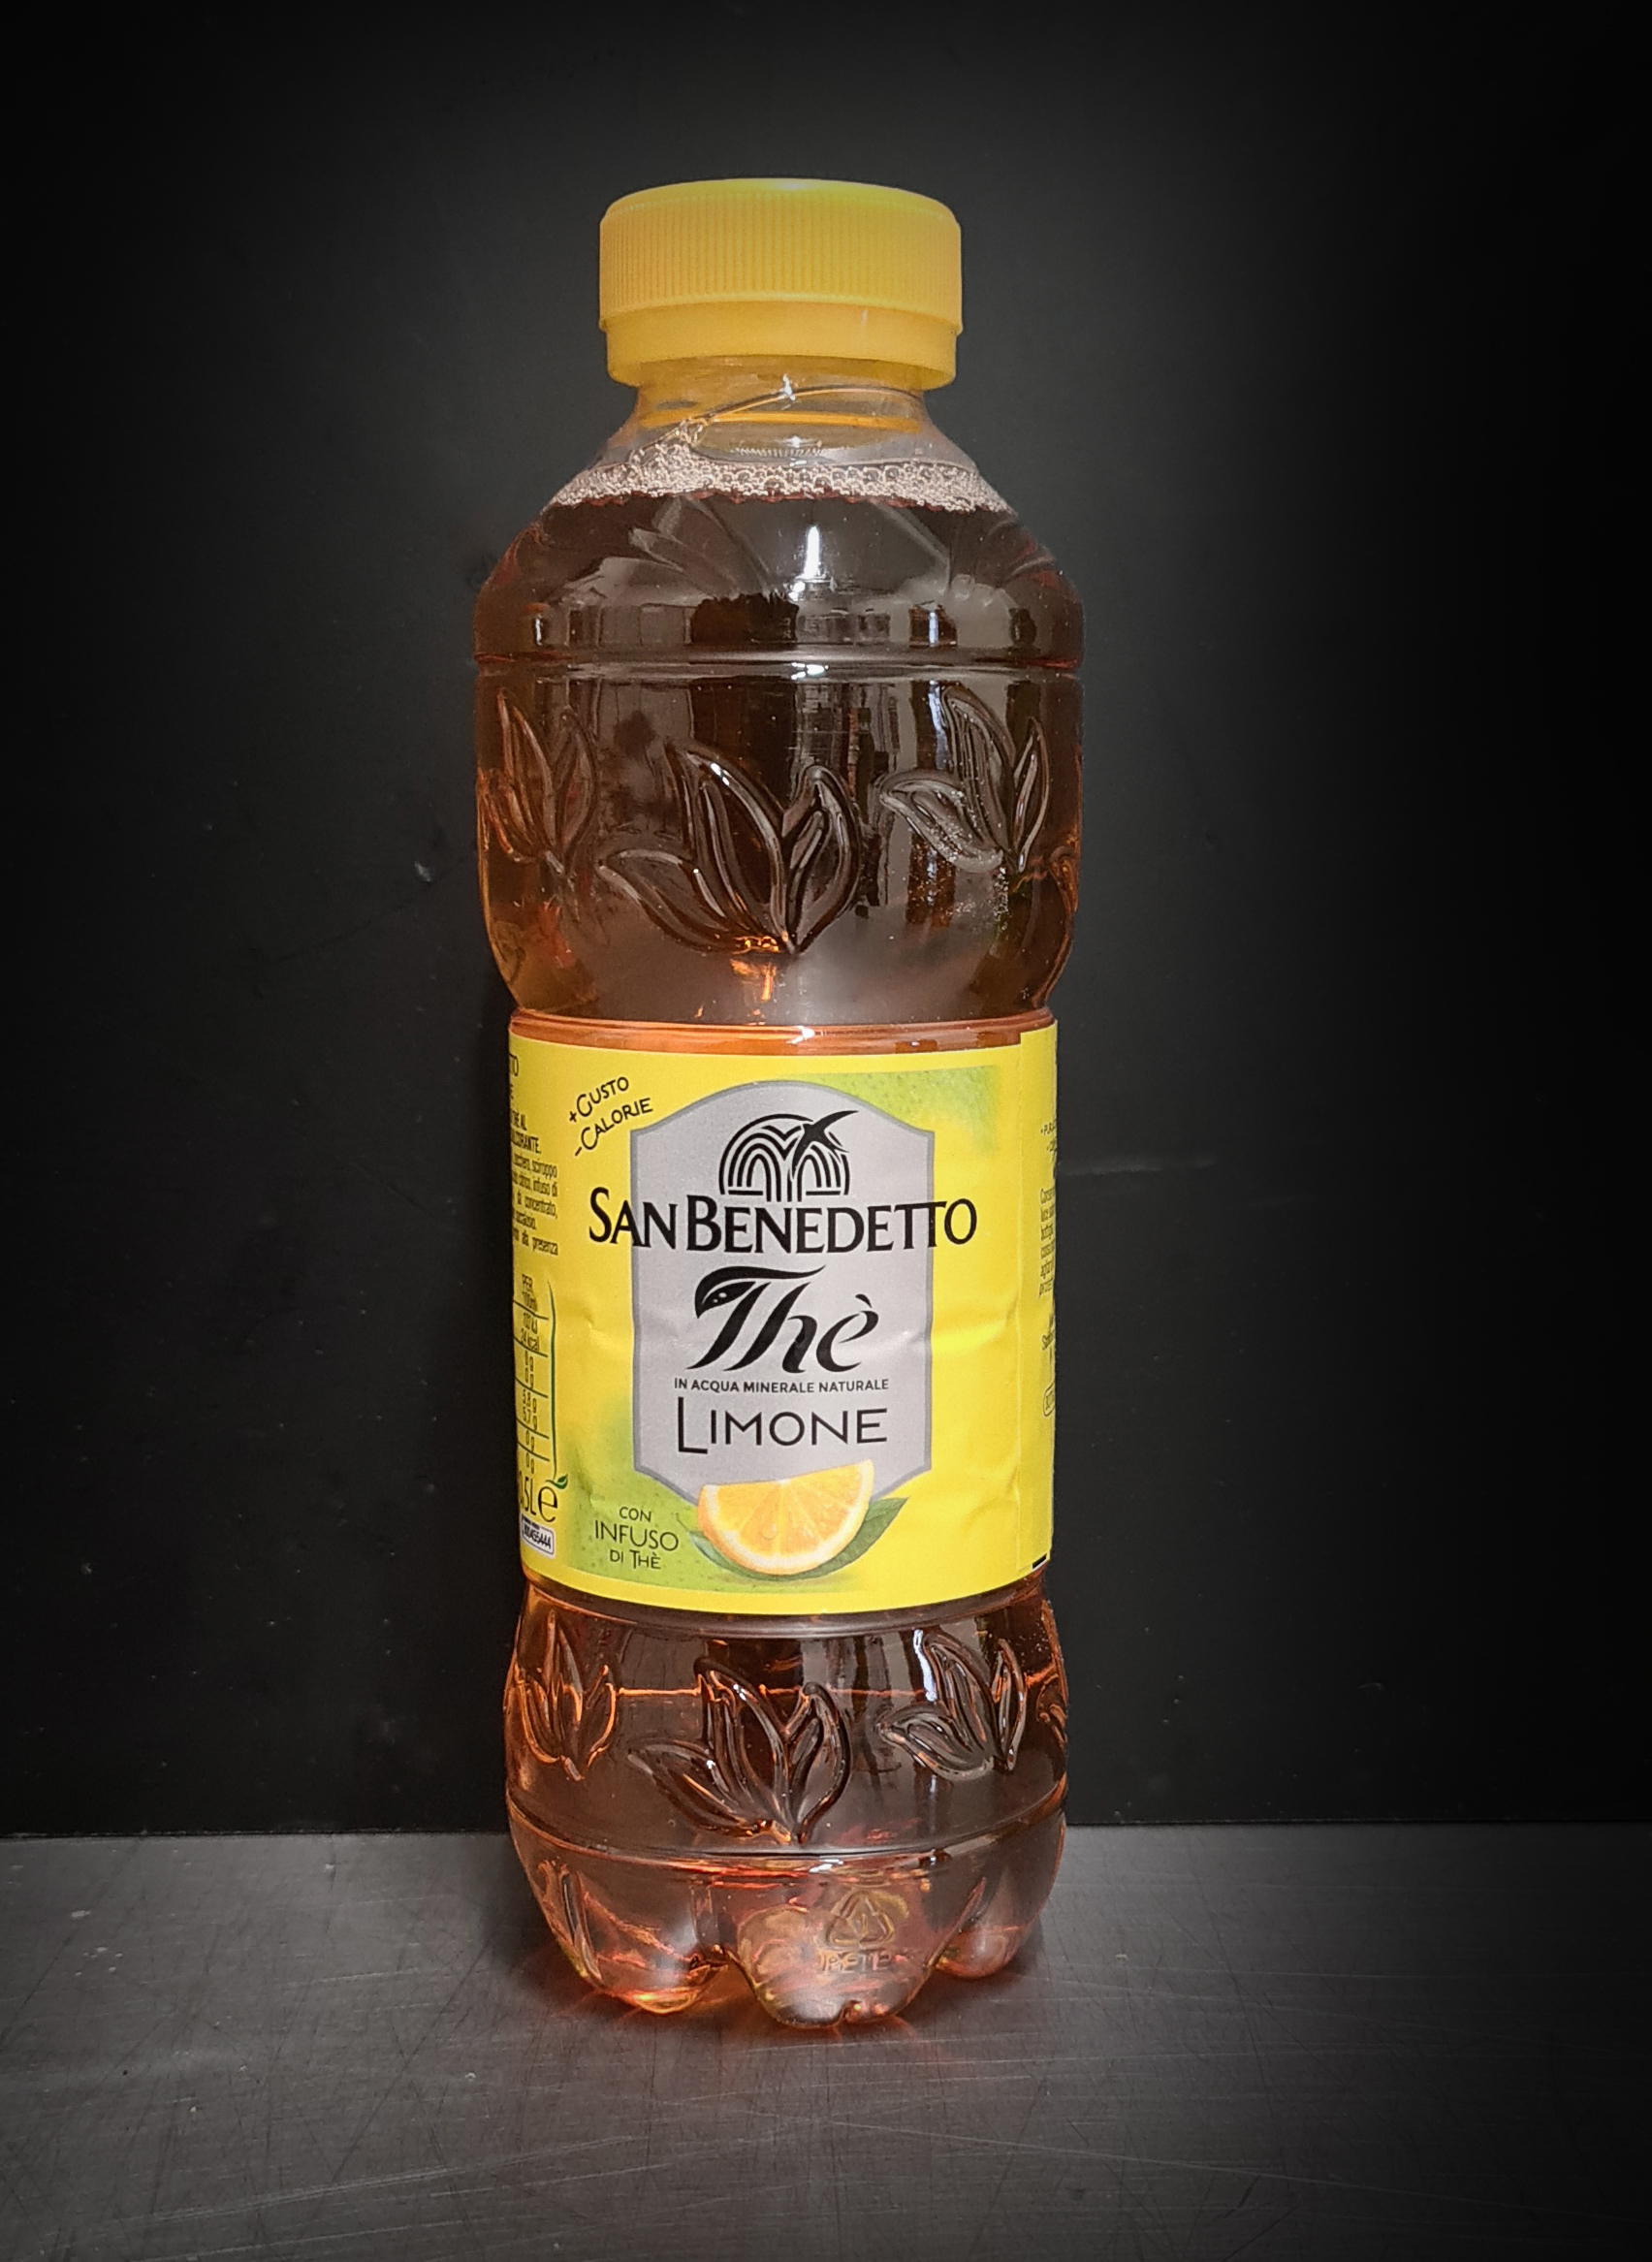 Tè al limone, San benedetto, 0,5 Lt. – Centro Carni Rigamonti